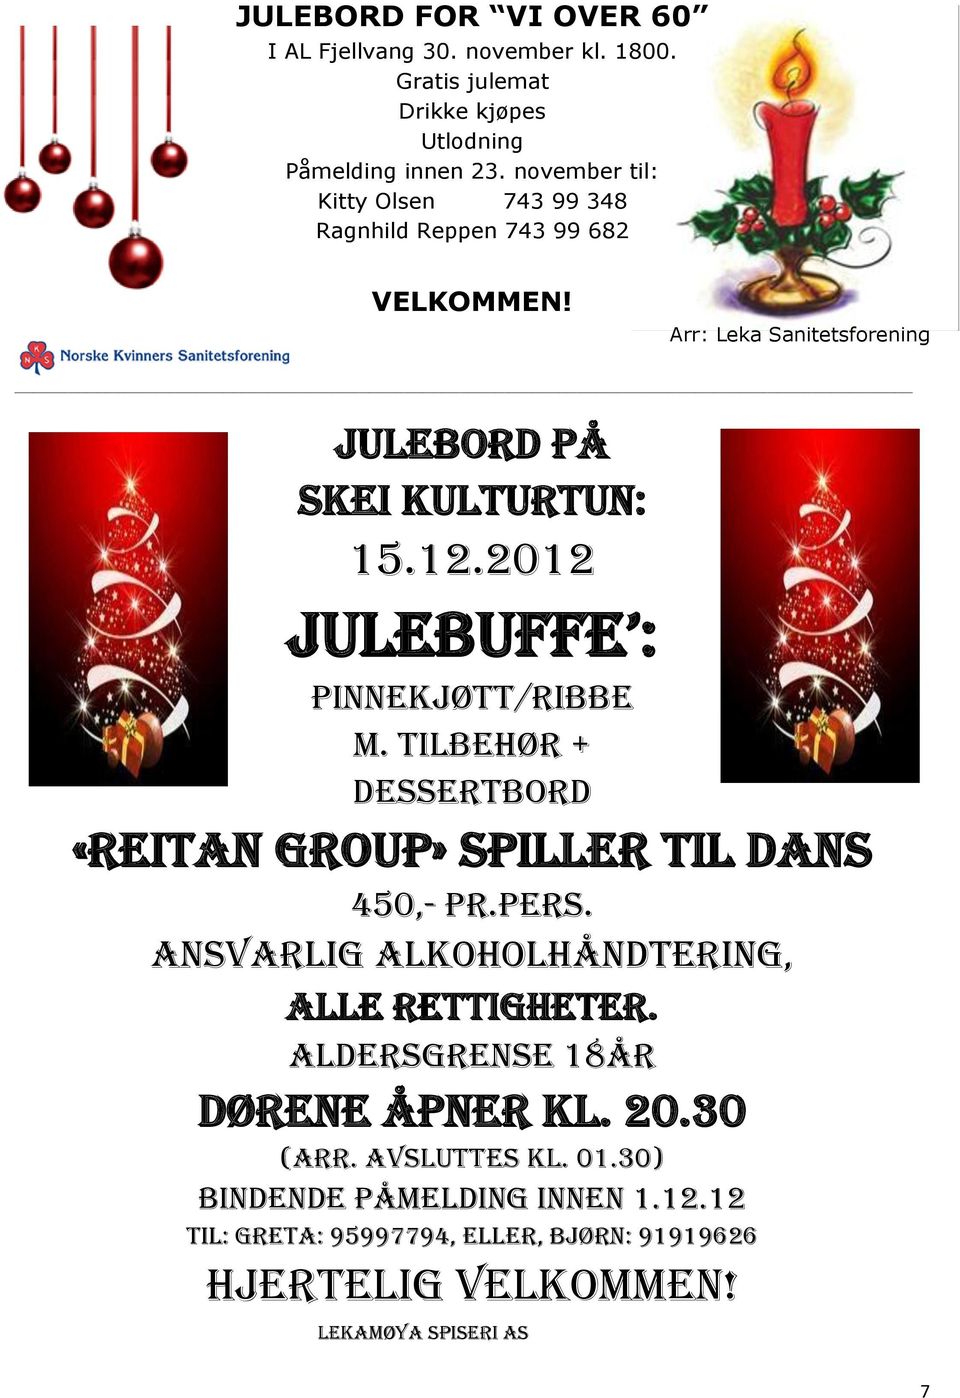 2012 julebuffe : Pinnekjøtt/ribbe m. tilbehør + dessertbord «Reitan group» spiller til dans 450,- pr.pers.